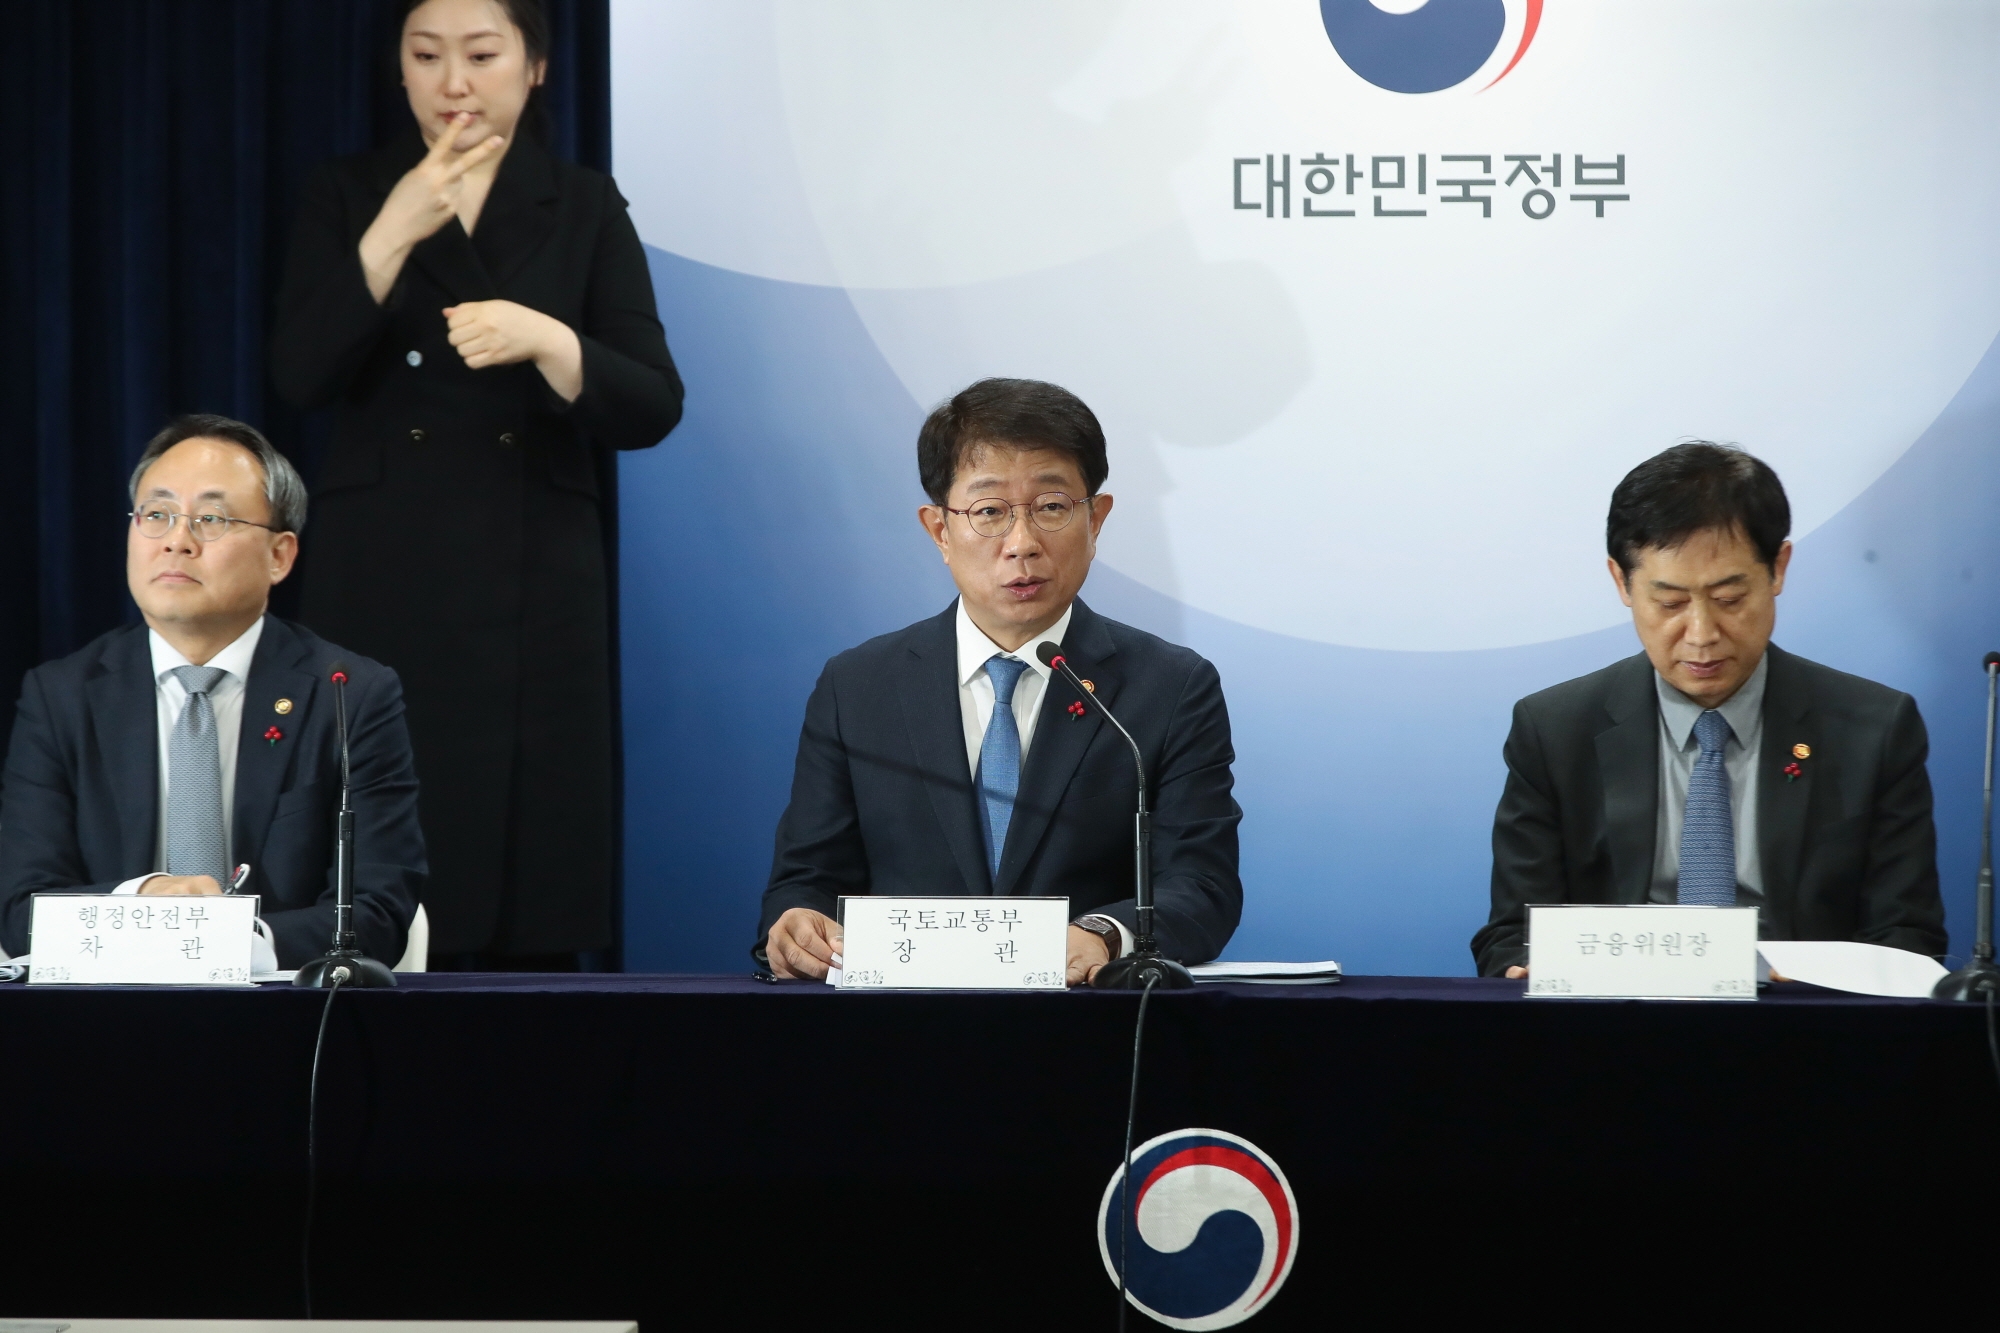 박상우 국토교통부 장관이 10일 민생토론회에서 발언하는 모습./사진제공=국토부